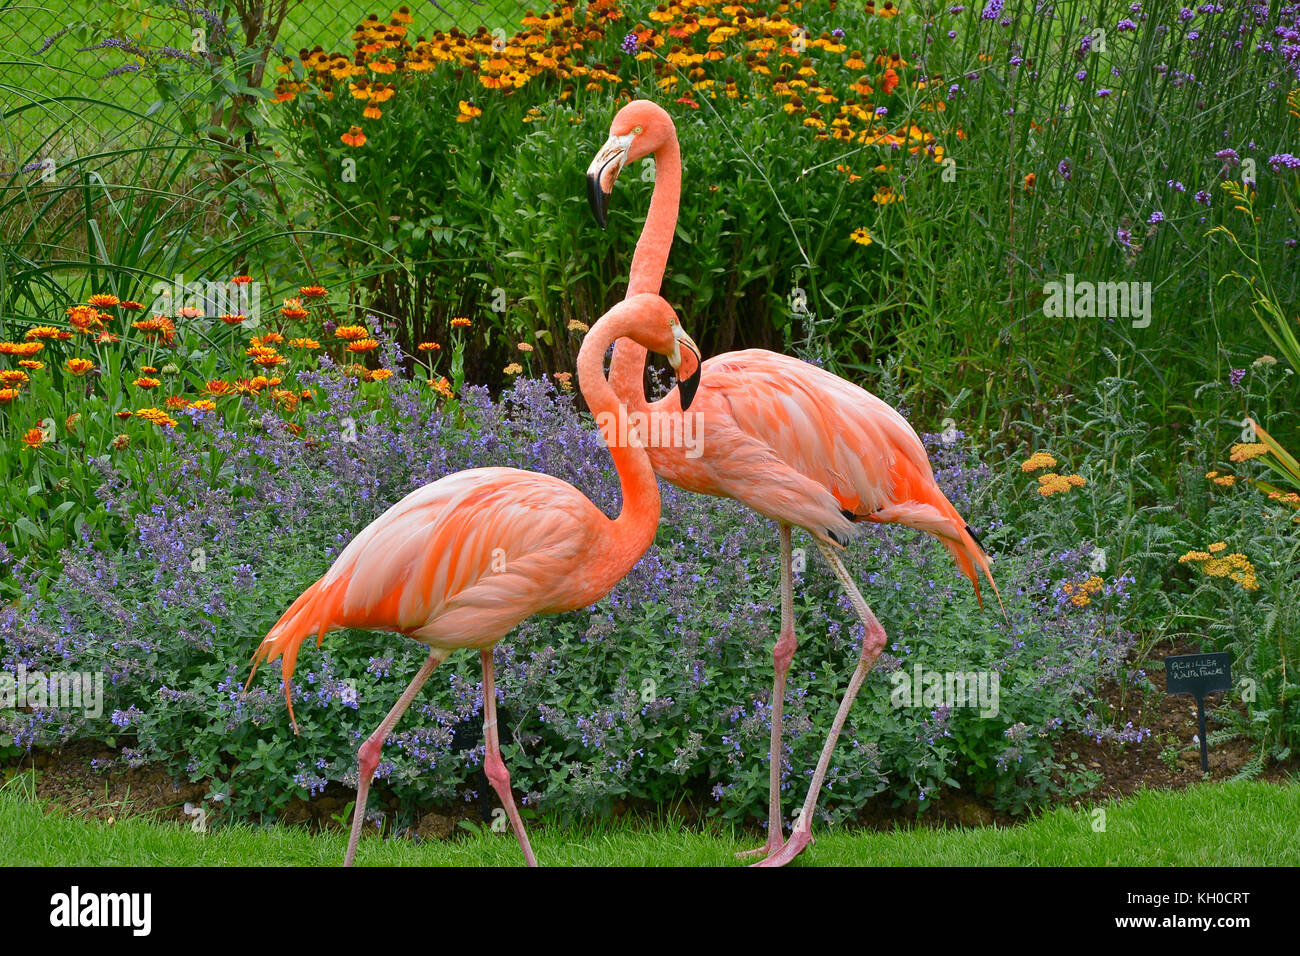 Zwei bunte Flamingos vor einem Blume Grenze in einem Land Garten Stockfoto